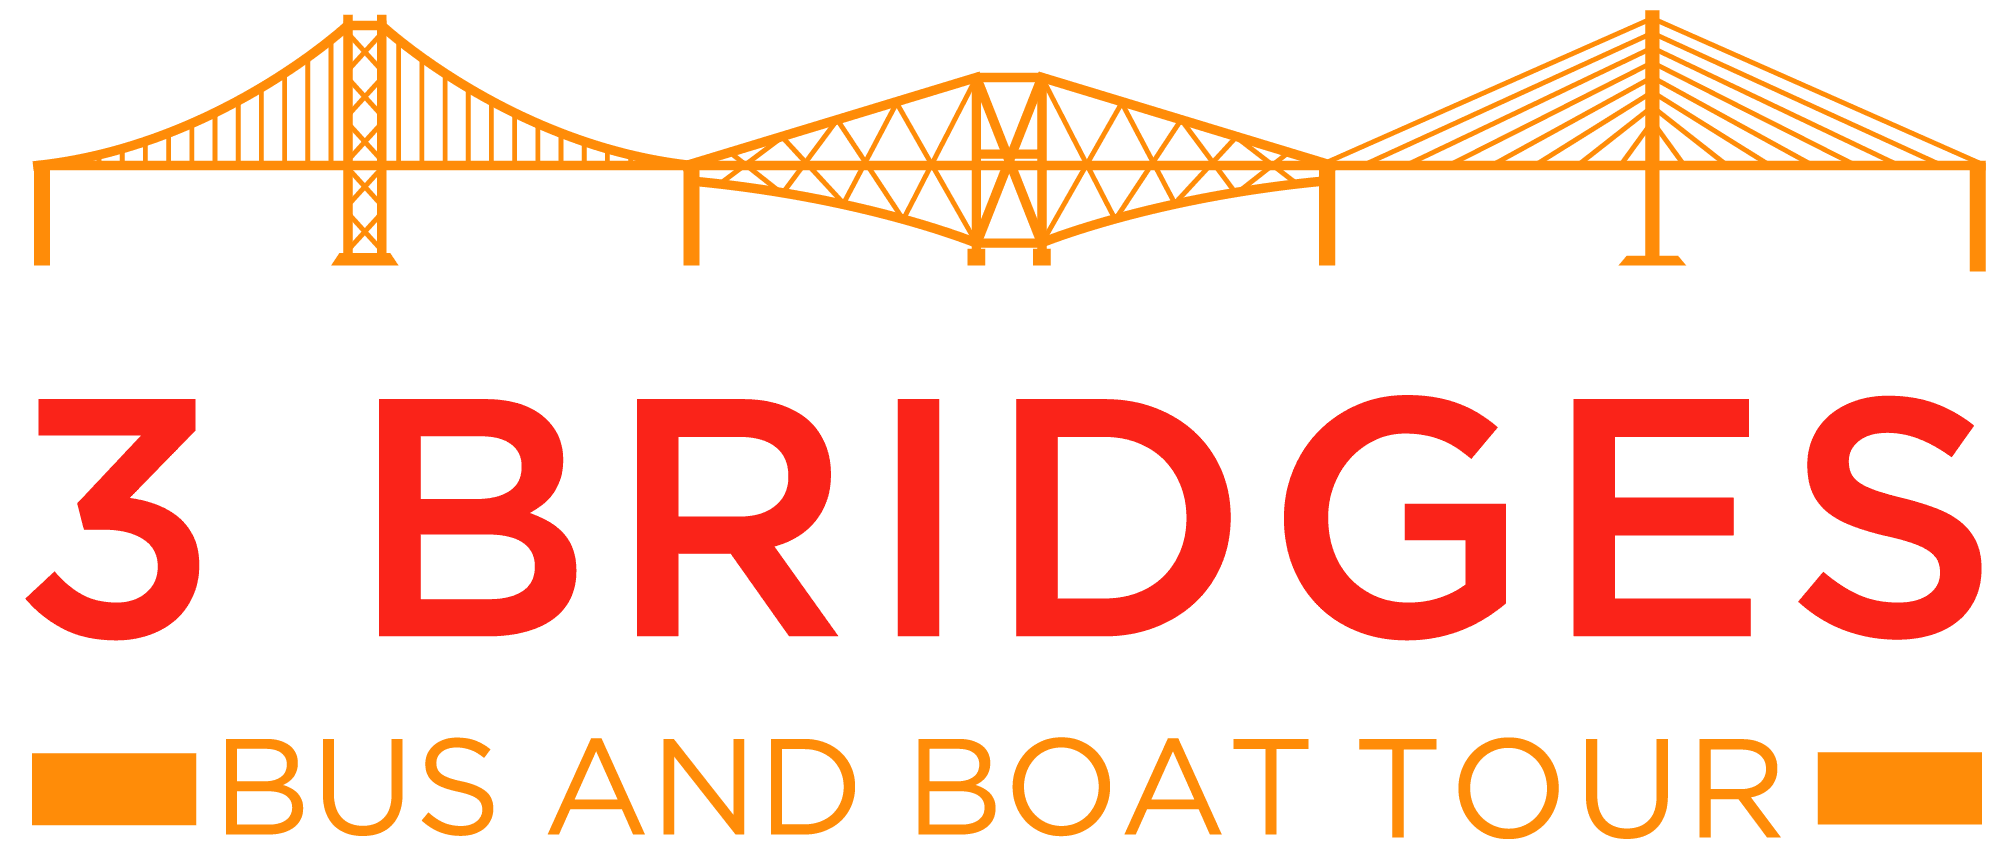 3 Bridges - Bus and Boat Tour